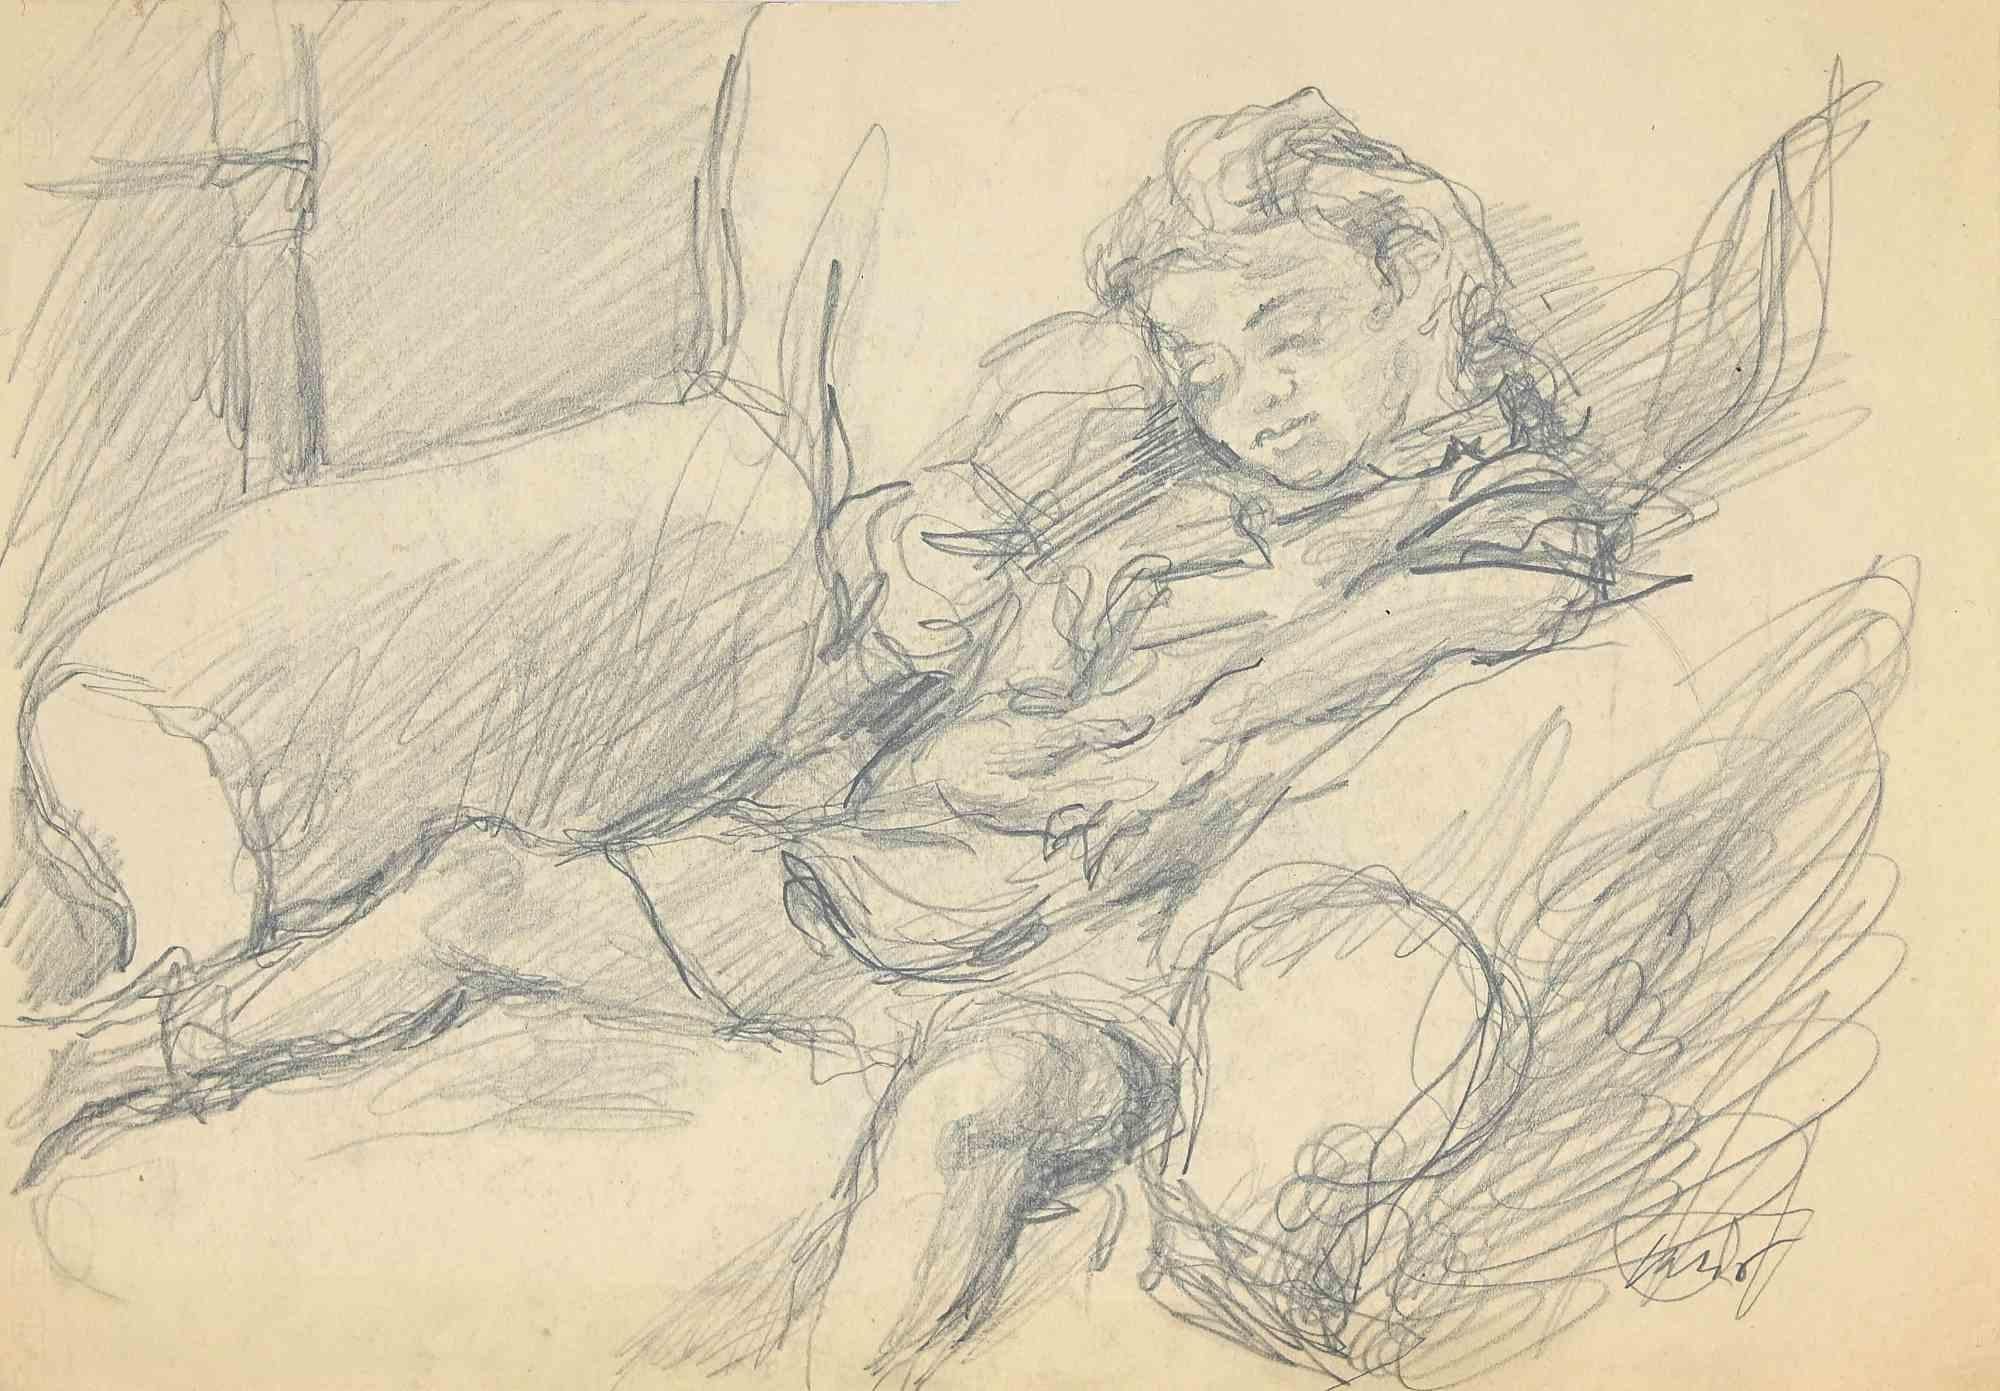 Das Mädchen ist eine originale Bleistiftzeichnung und Aquarell von Mino Maccari aus der Mitte des 20. Jahrhunderts.

Guter Zustand auf vergilbtem Papier.

Handsigniert vom Künstler mit Bleistift.

Mino Maccari (1898-1989) war ein italienischer